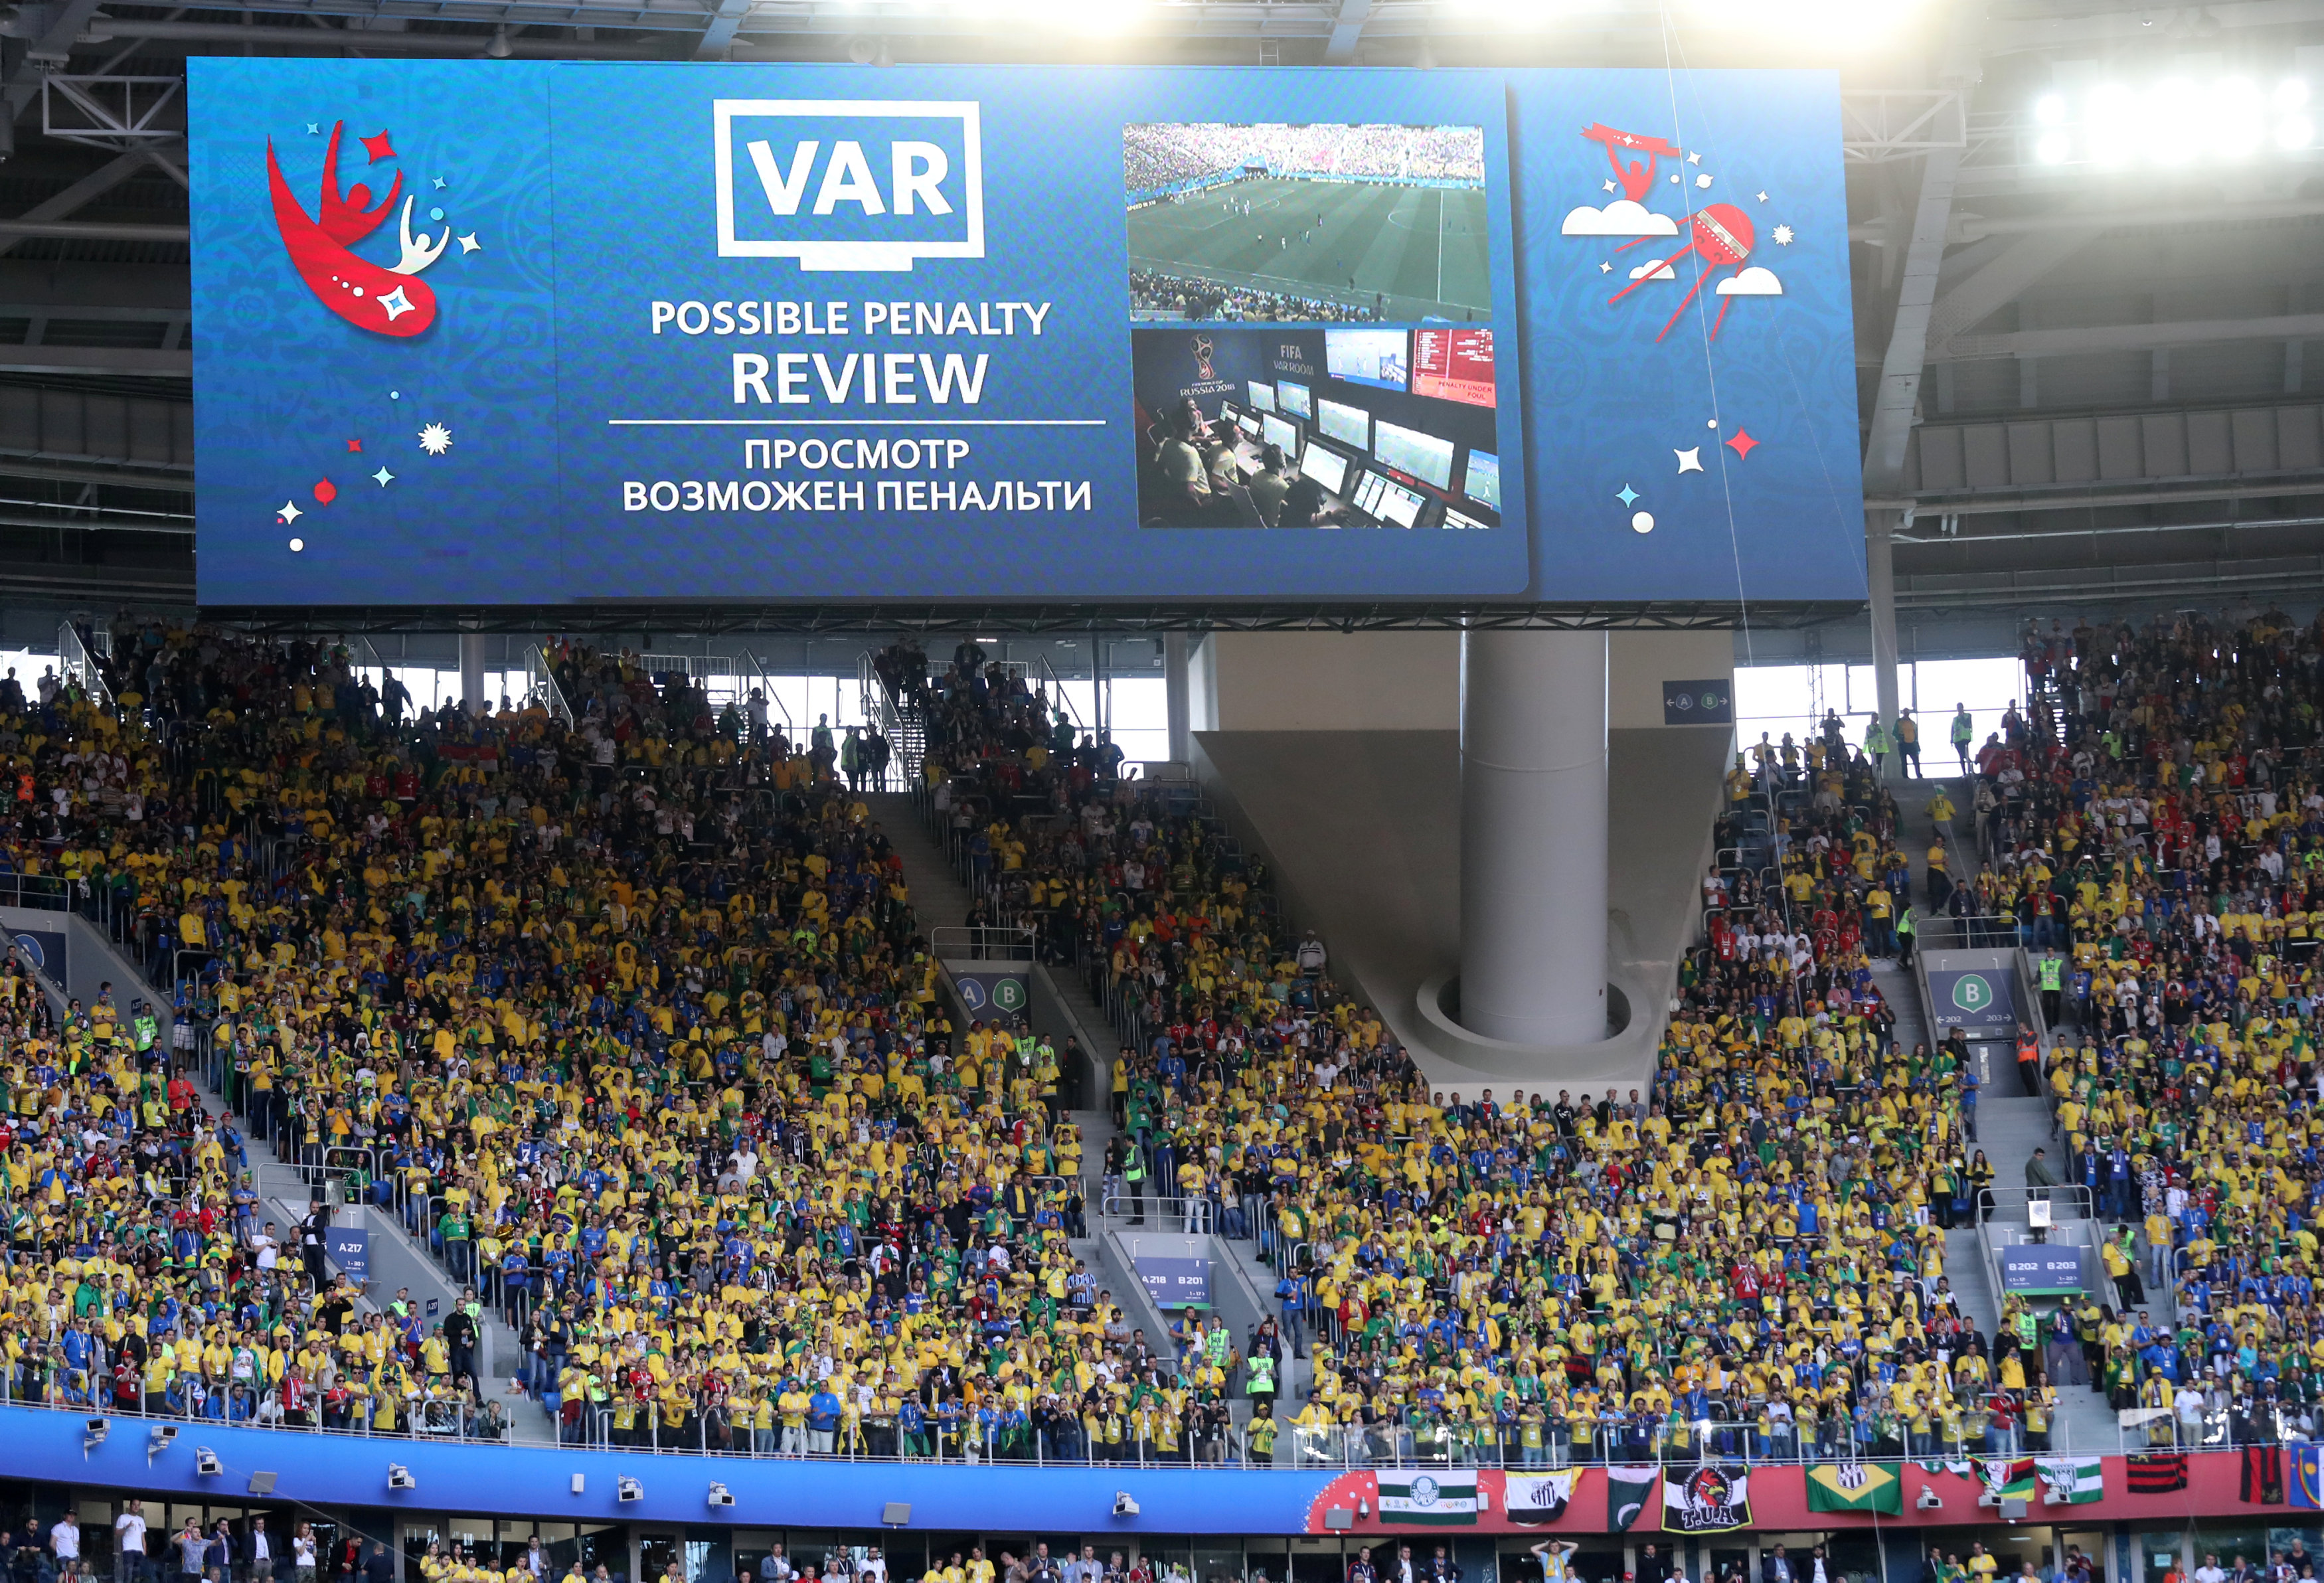 Μουντιάλ 2018: Το VAR έχει αυξήσει την διάρκεια των παιχνιδιών